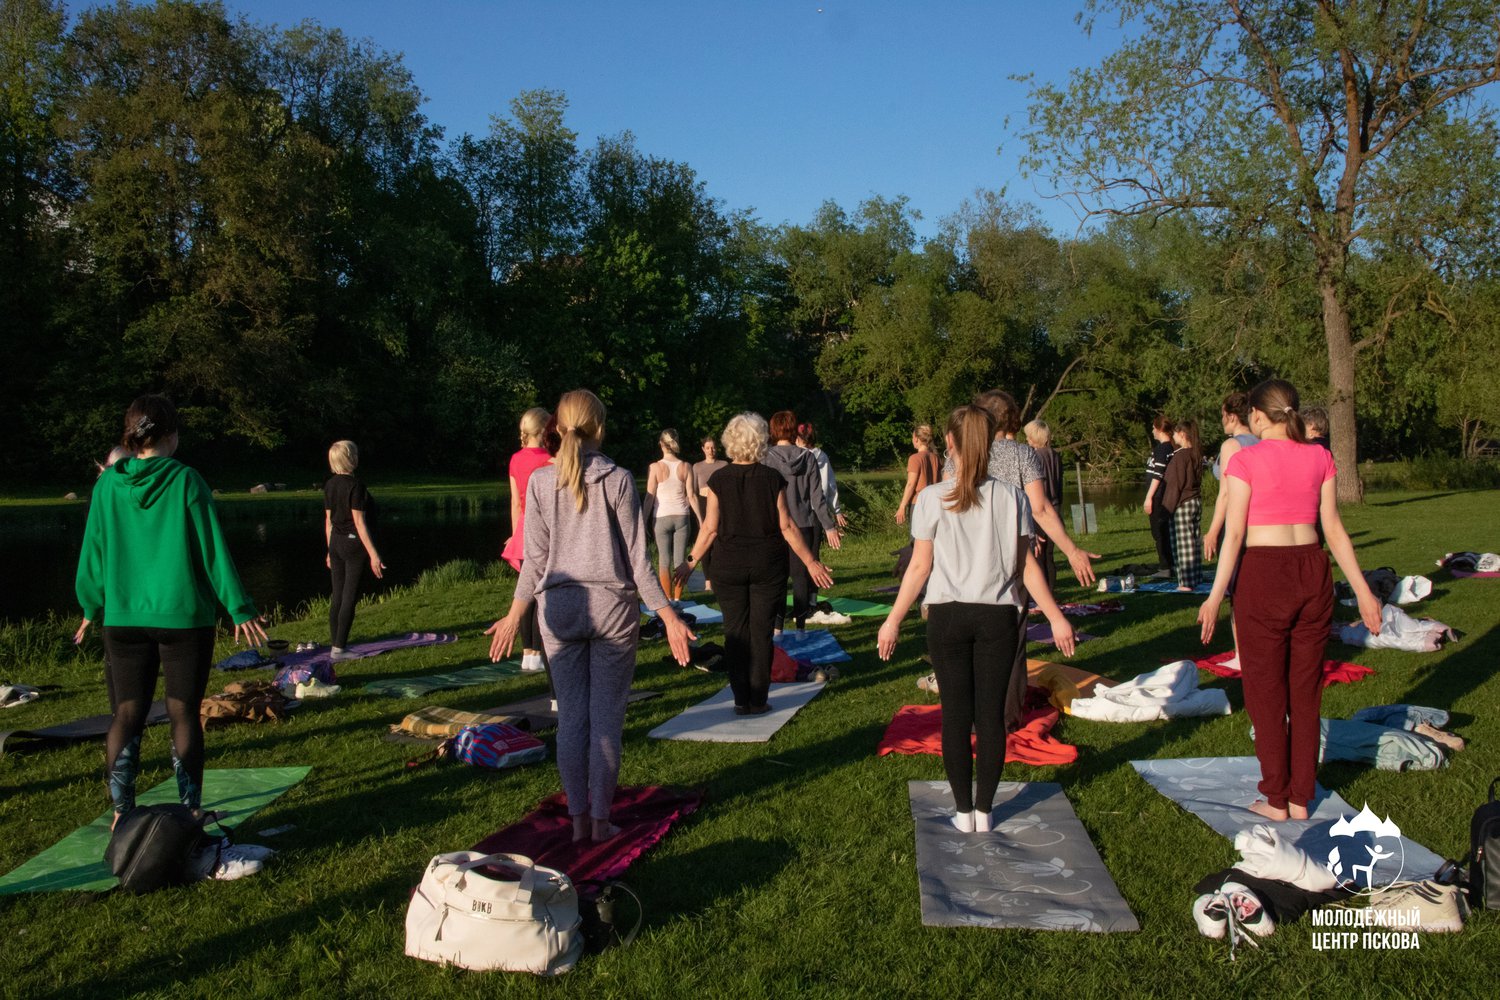 Псковский городской молодёжный центр приглашает молодёжь Пскова на бесплатное занятие по йоге на свежем воздухе «Йога в потоке».